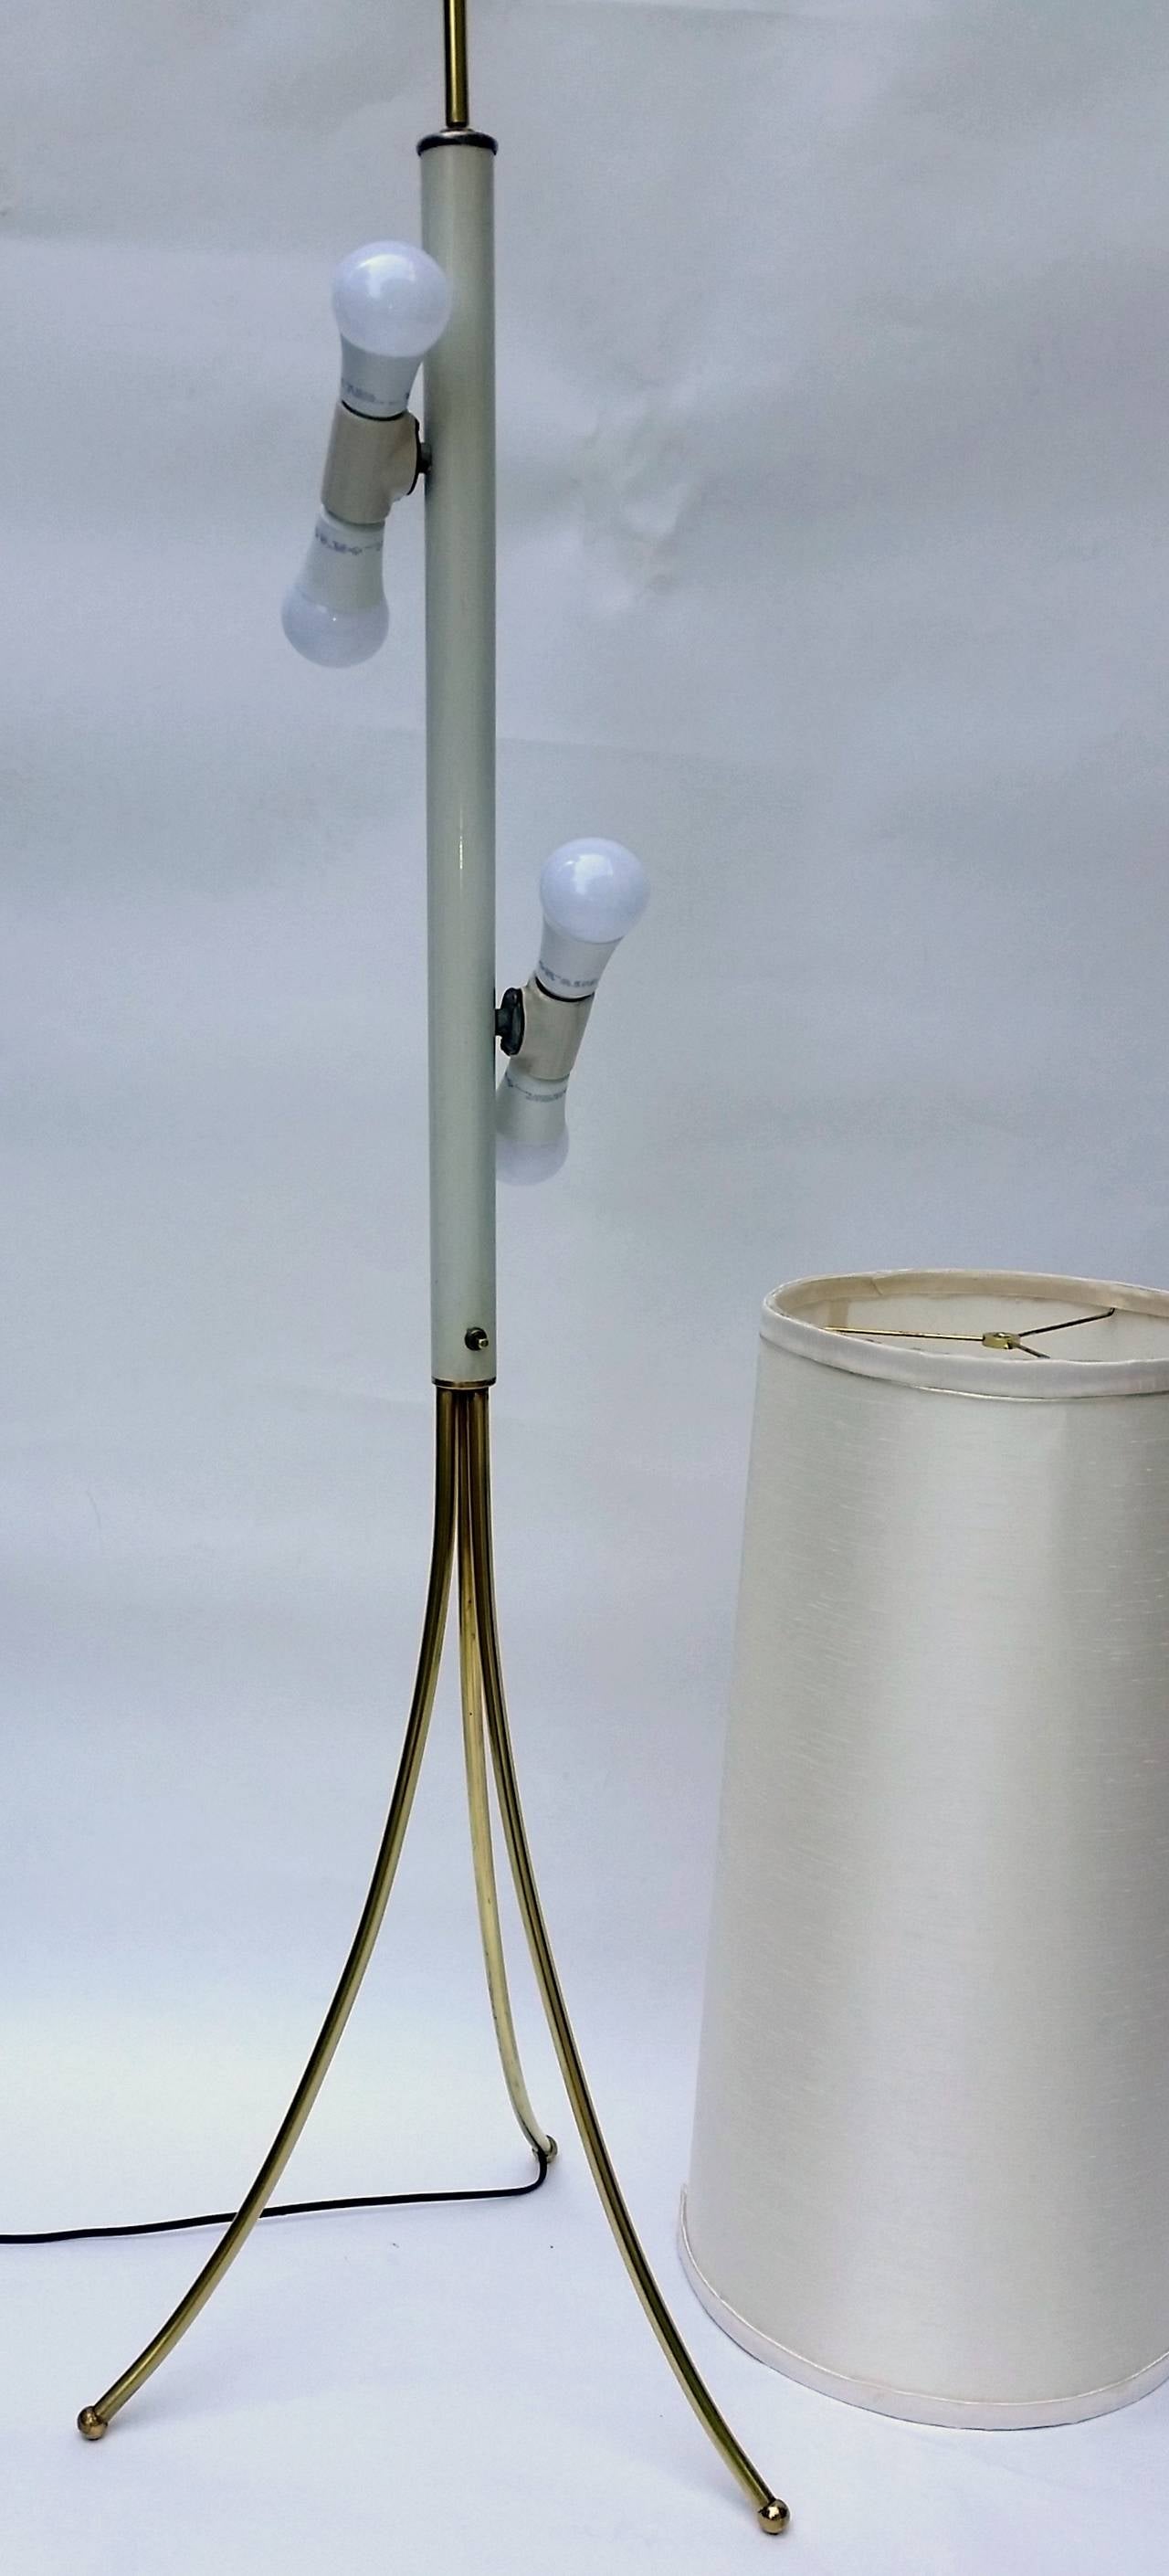 Lampadaire de style Robsjohn-Gibbings fabriqué à Chicago au début des années 1950.

La lampe est en excellent état.